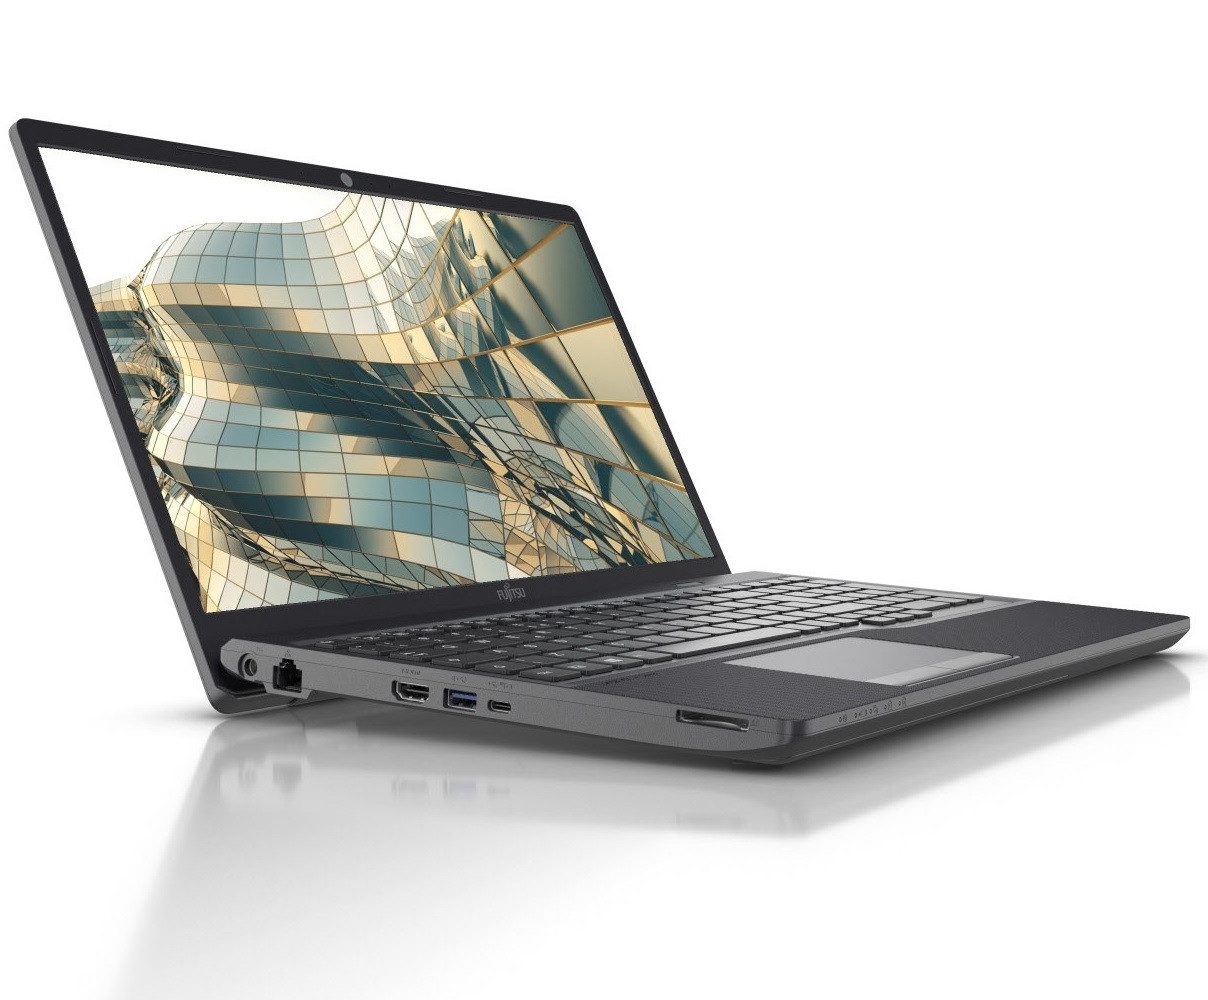 Fujitsu LifeBook A3511 - Windows 11 Pro - 256 GB SSD - 8 GB RAM - Full HD Notebook (39,60 cm/15.6 Zoll, Intel Core i3 i3-1115G4, UHD Graphics, 256 GB SSD, Win 11 Laptop bis zu 4,10 GHz mit Intel® Turbo, HD Webcam)